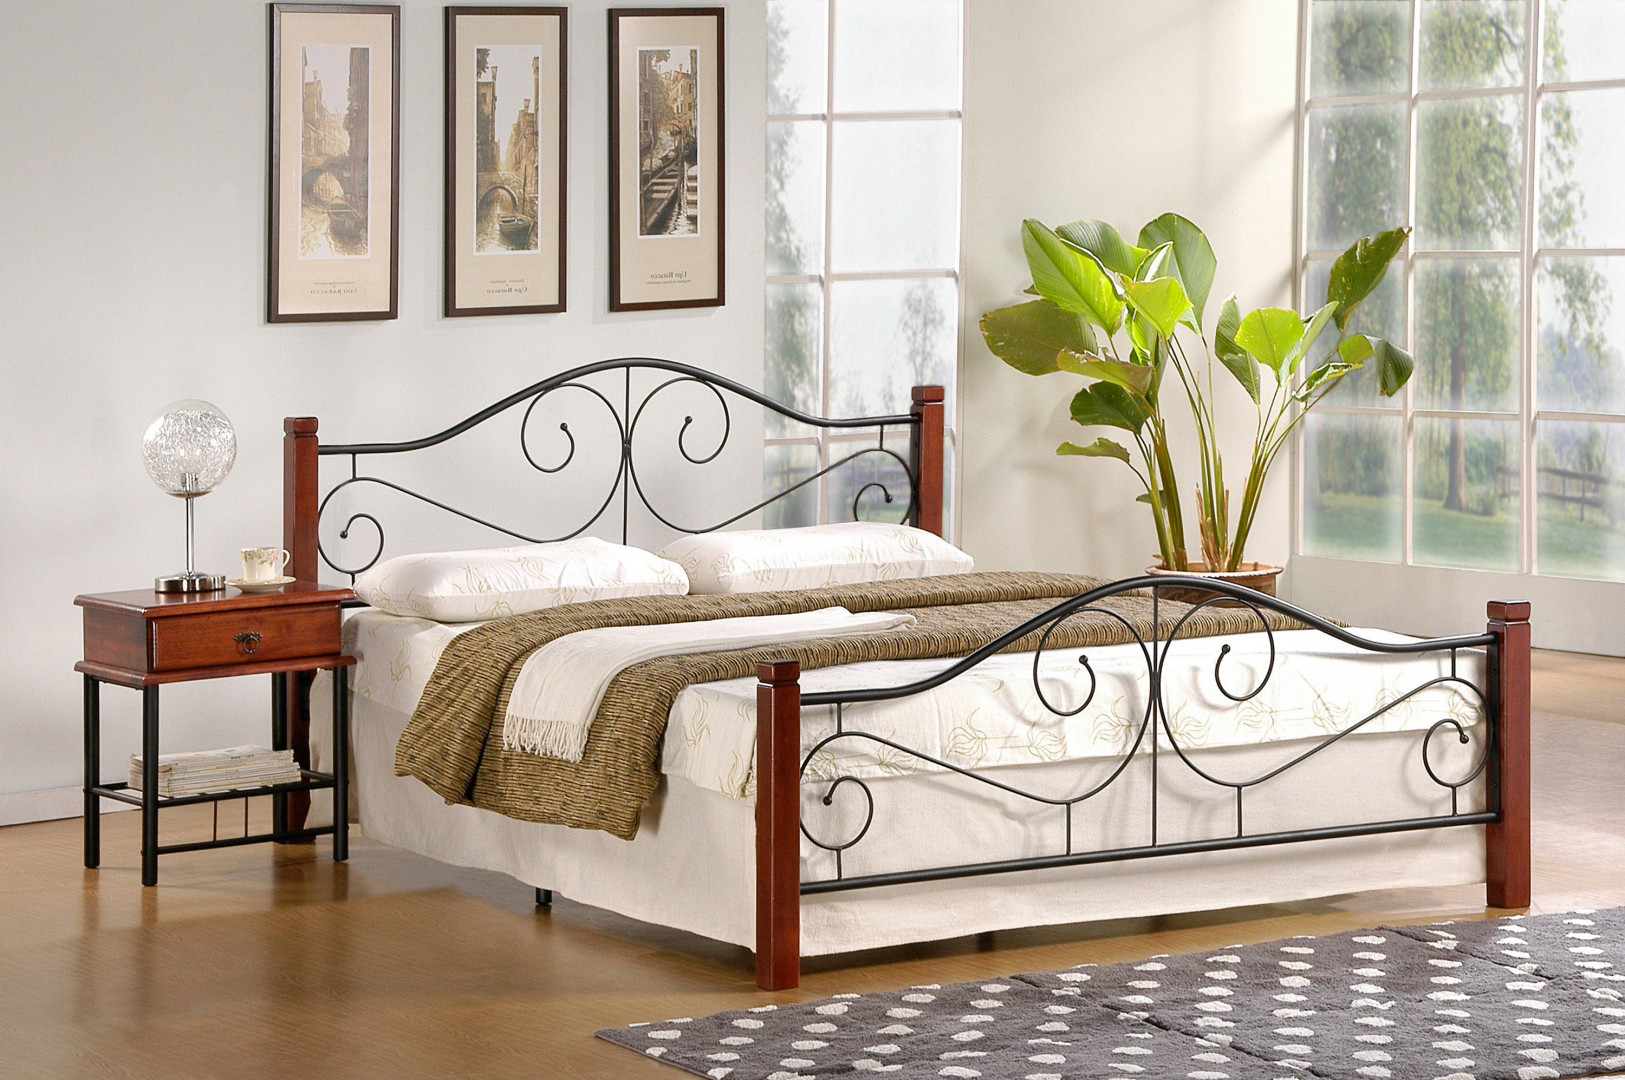 Produkt w kategorii: Łóżka, nazwa produktu: Łóżko Violetta 160 - eleganckie połączenie drewna i metalu